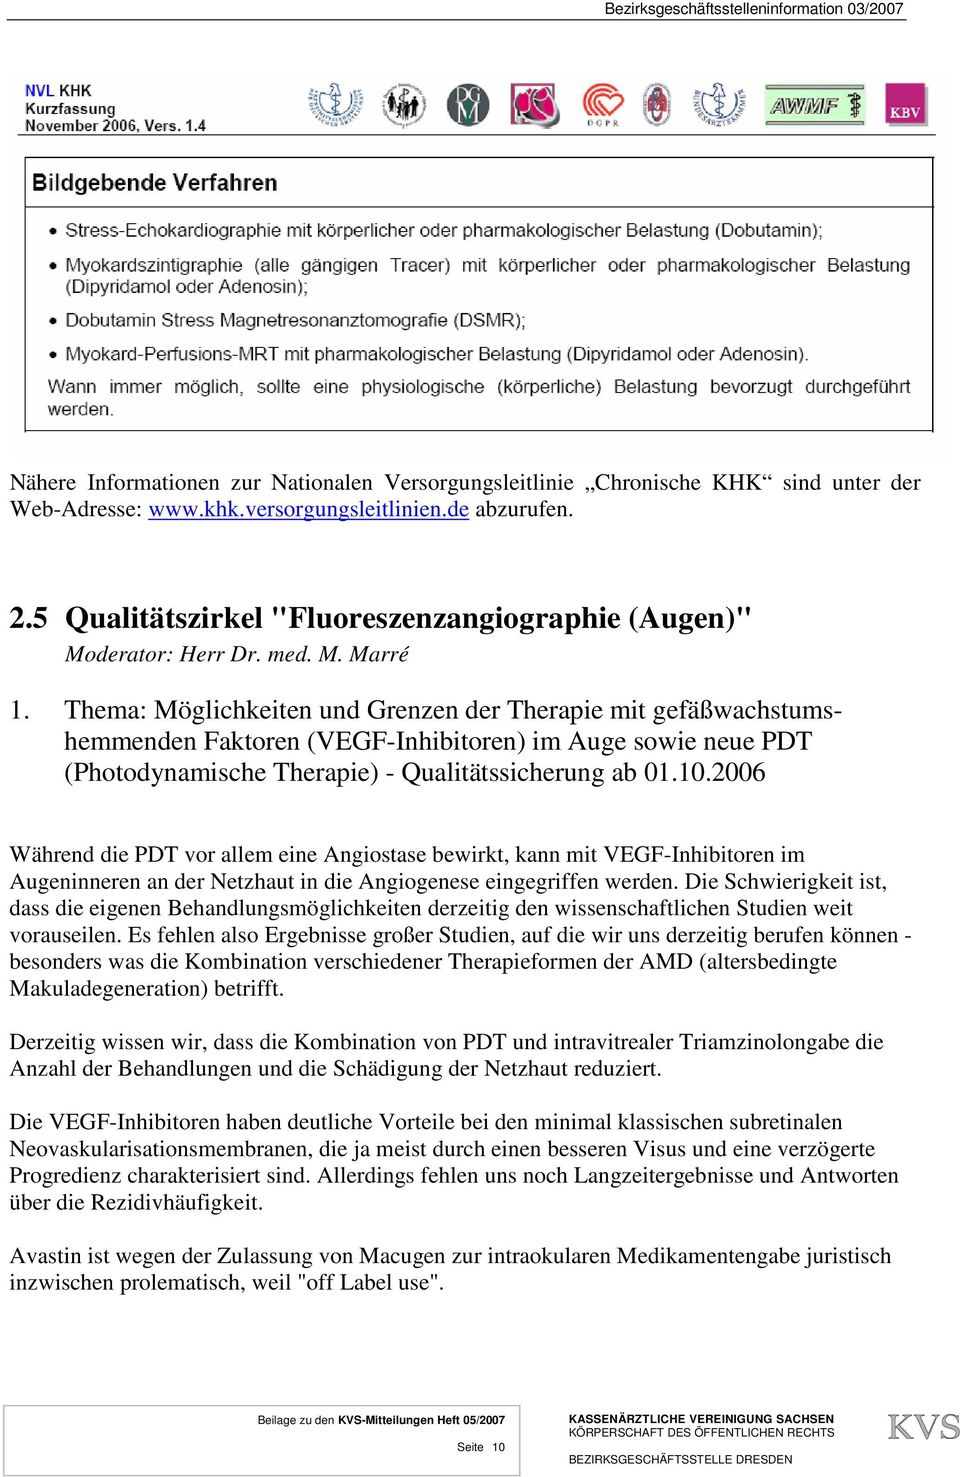 Thema: Möglichkeiten und Grenzen der Therapie mit gefäßwachstumshemmenden Faktoren (VEGF-Inhibitoren) im Auge sowie neue PDT (Photodynamische Therapie) - Qualitätssicherung ab 01.10.